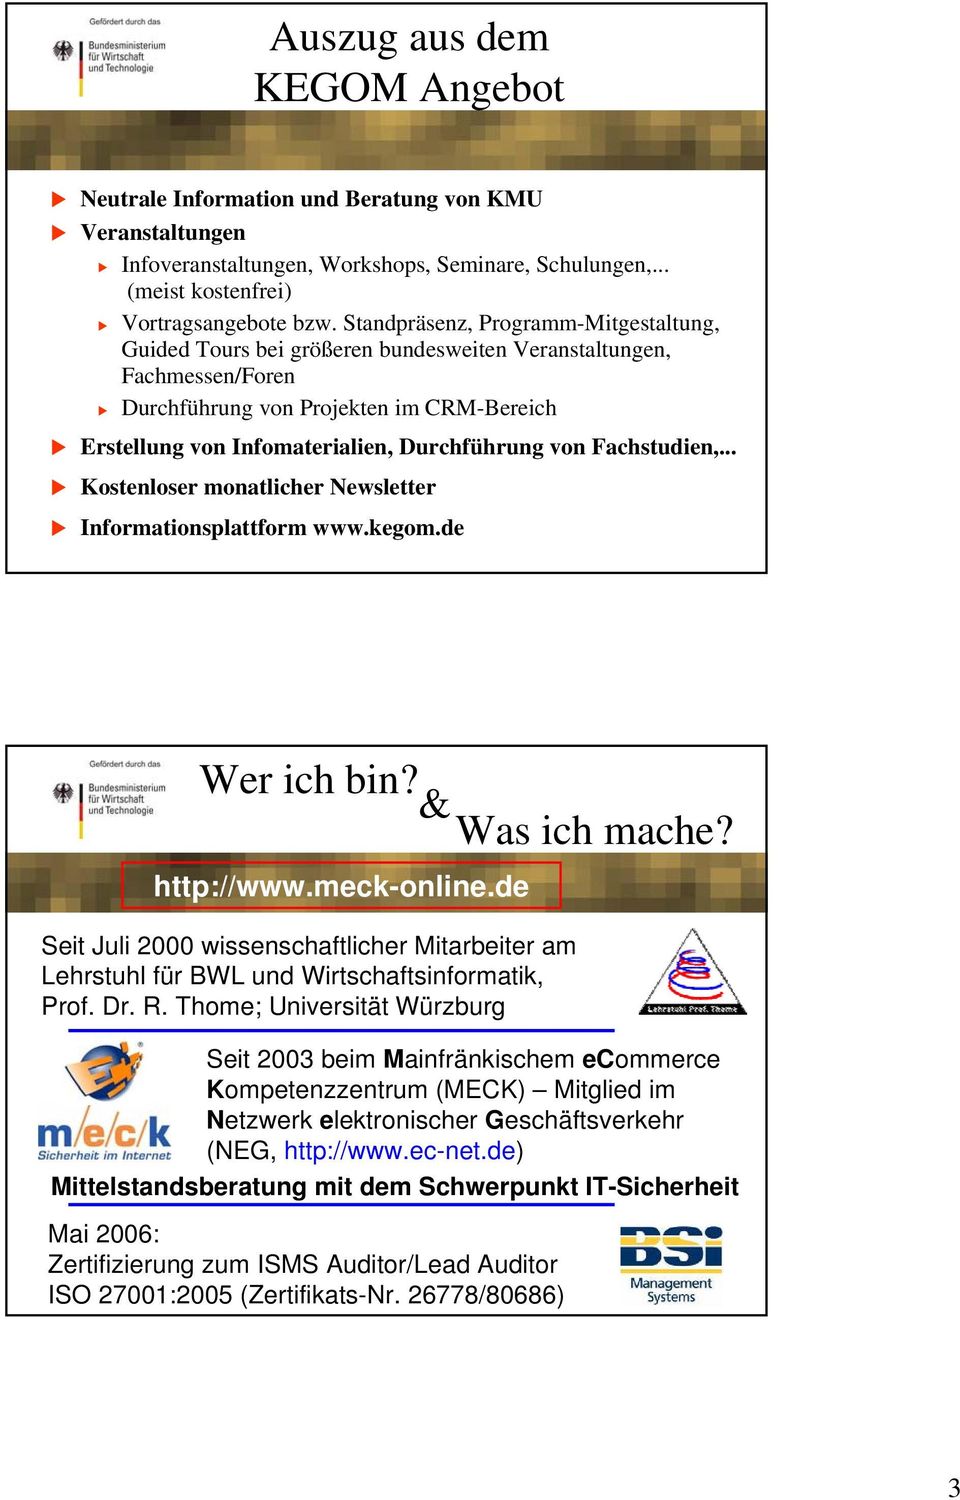 von Fachstudien,... Kostenloser monatlicher Newsletter Informationsplattform www.kegom.de Wer ich bin? & Was ich mache? http://www.meck-online.